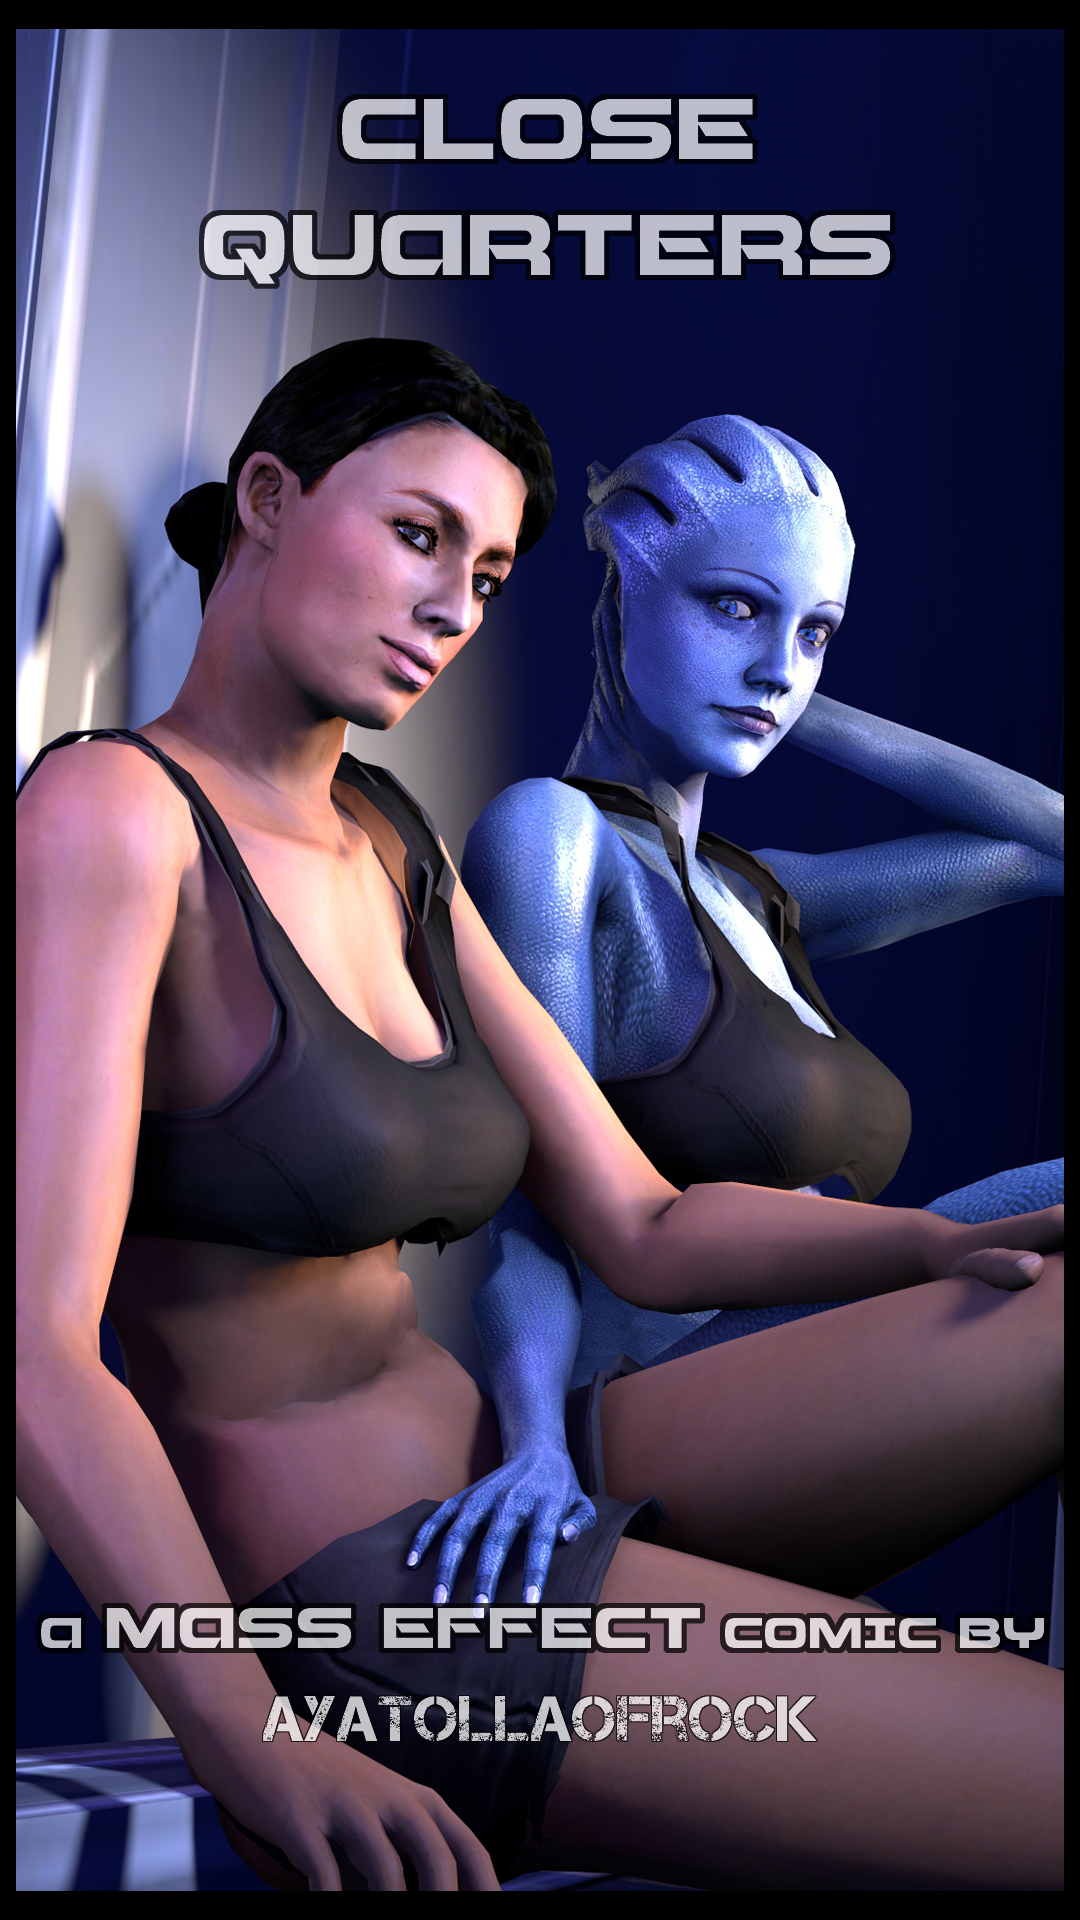 1080px x 1920px - Mass Effect- Close Quarters - Porn Cartoon Comics